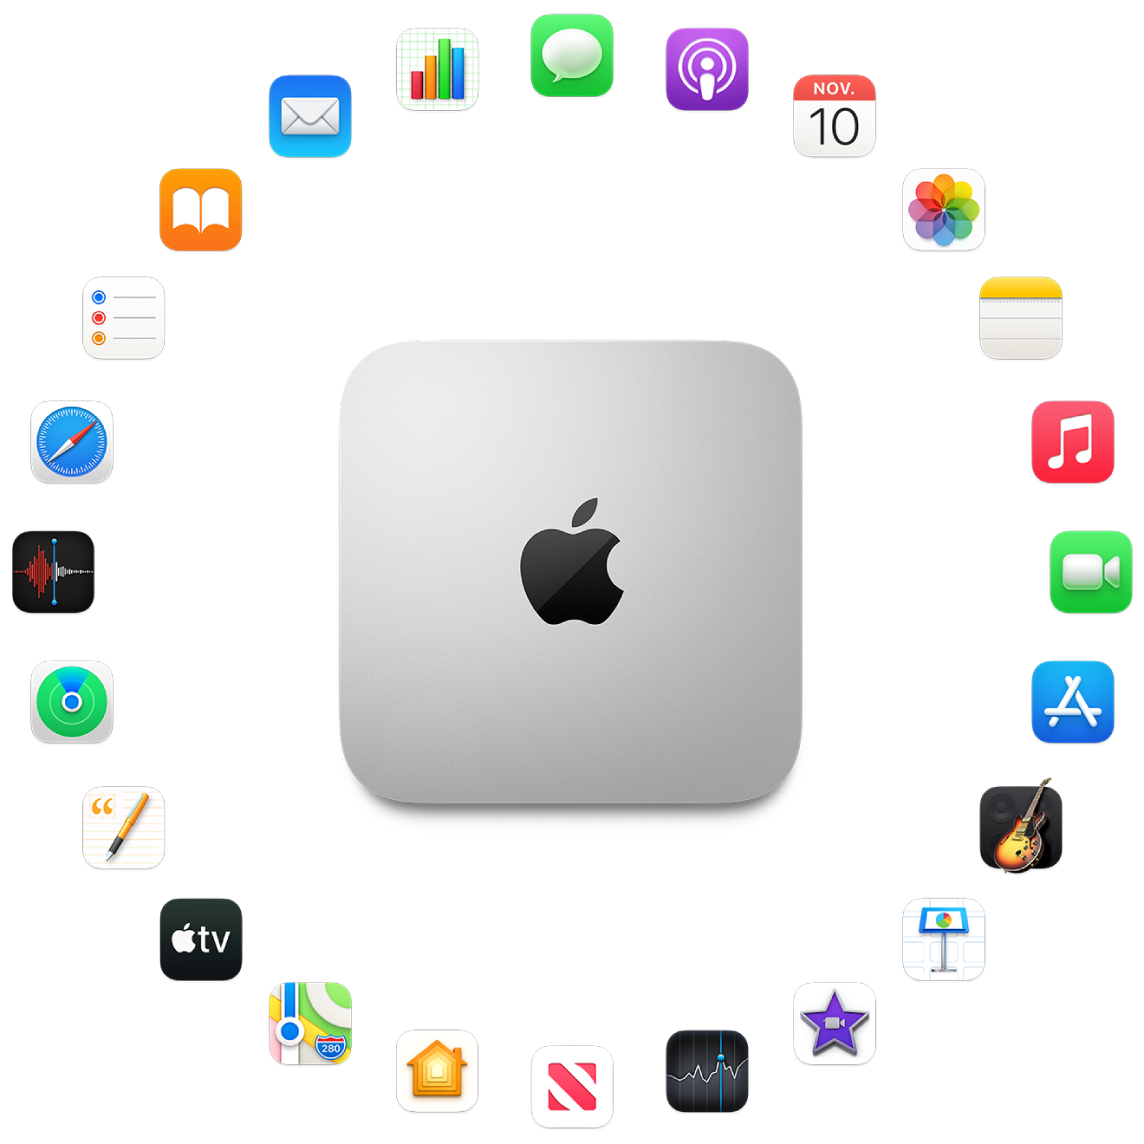 Een Mac mini omringd door symbolen voor de apps die standaard worden meegeleverd en die hierna worden beschreven.